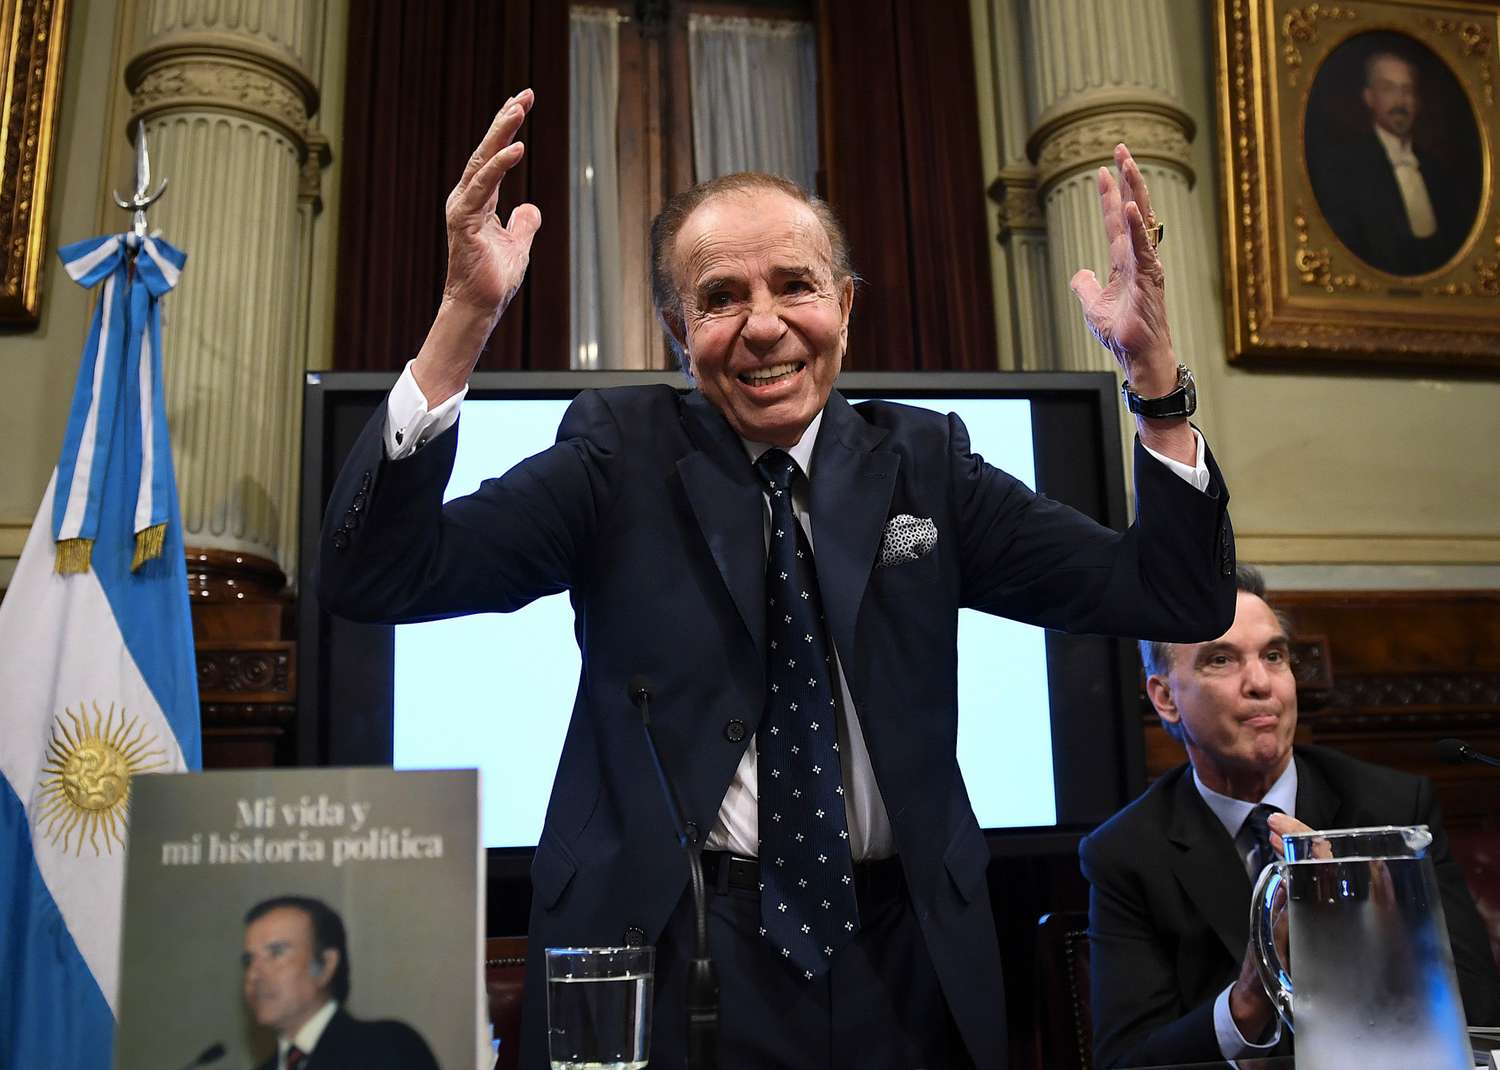 La Cámara Federal absolvió a Carlos Menem en la causa por la venta ilegal de armamento